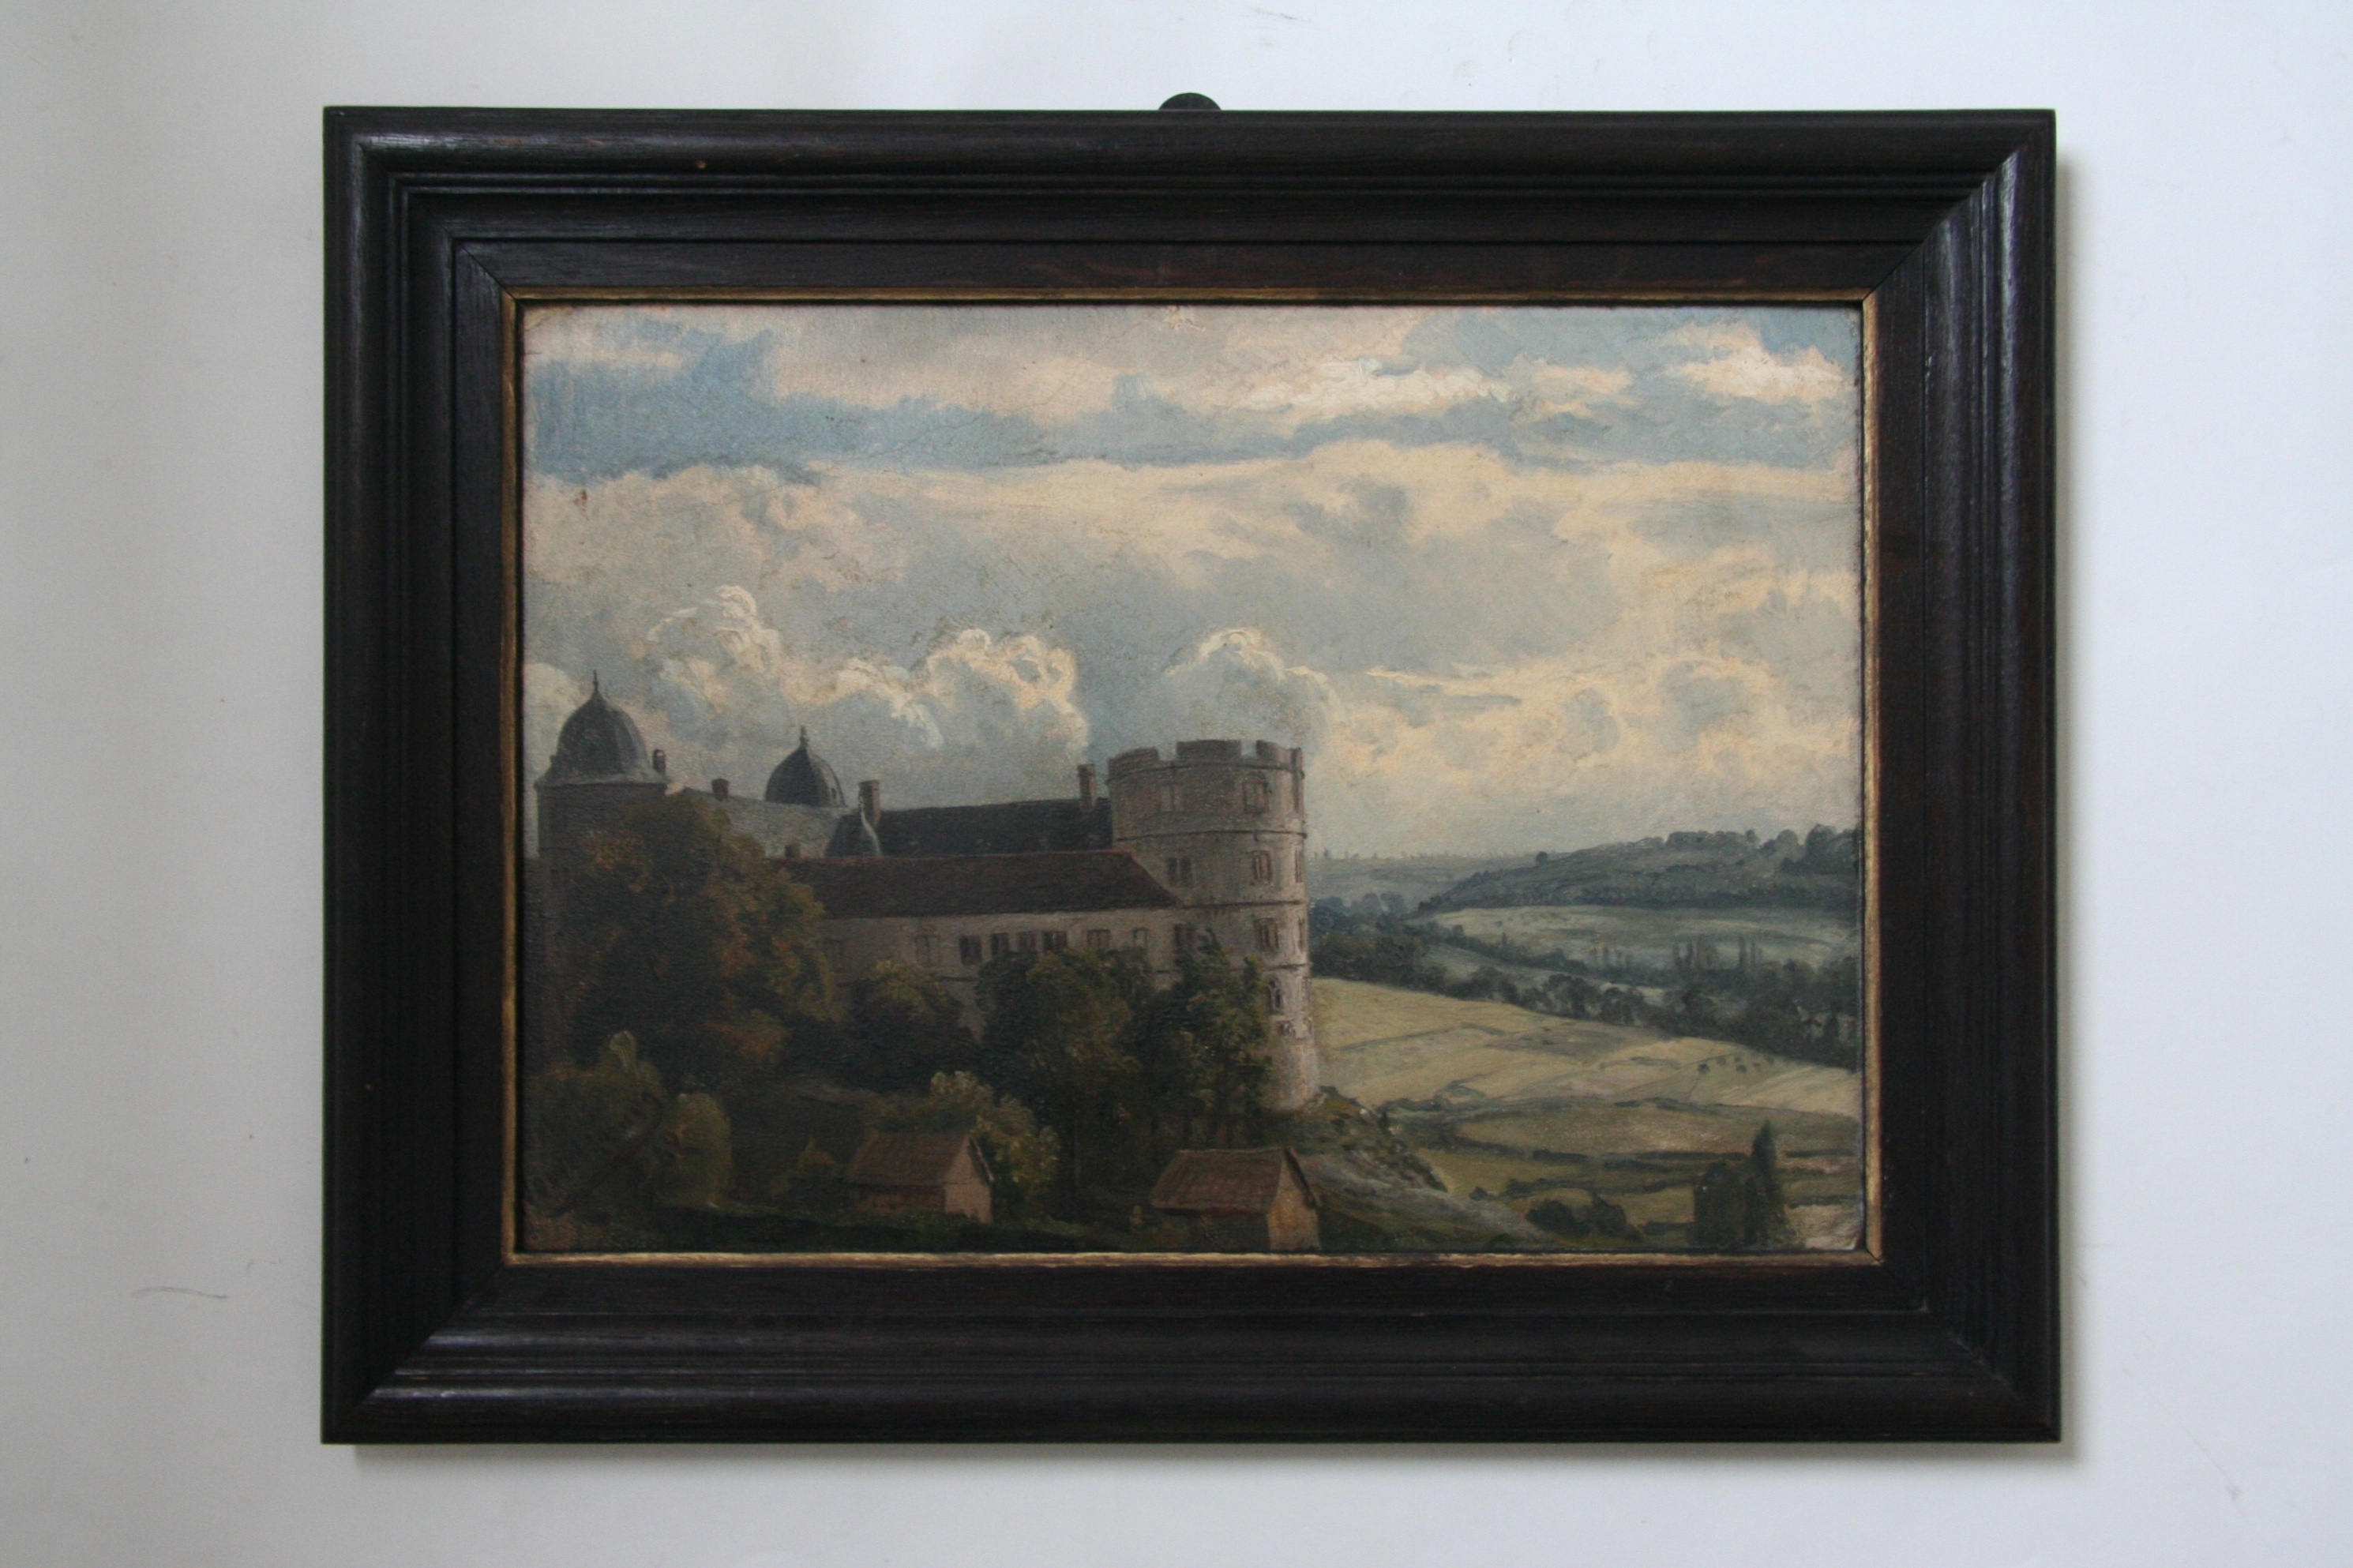 Gemälde "Wewelsburg" von Heinrich Deiters (Museen Burg Altena CC BY-NC-SA)